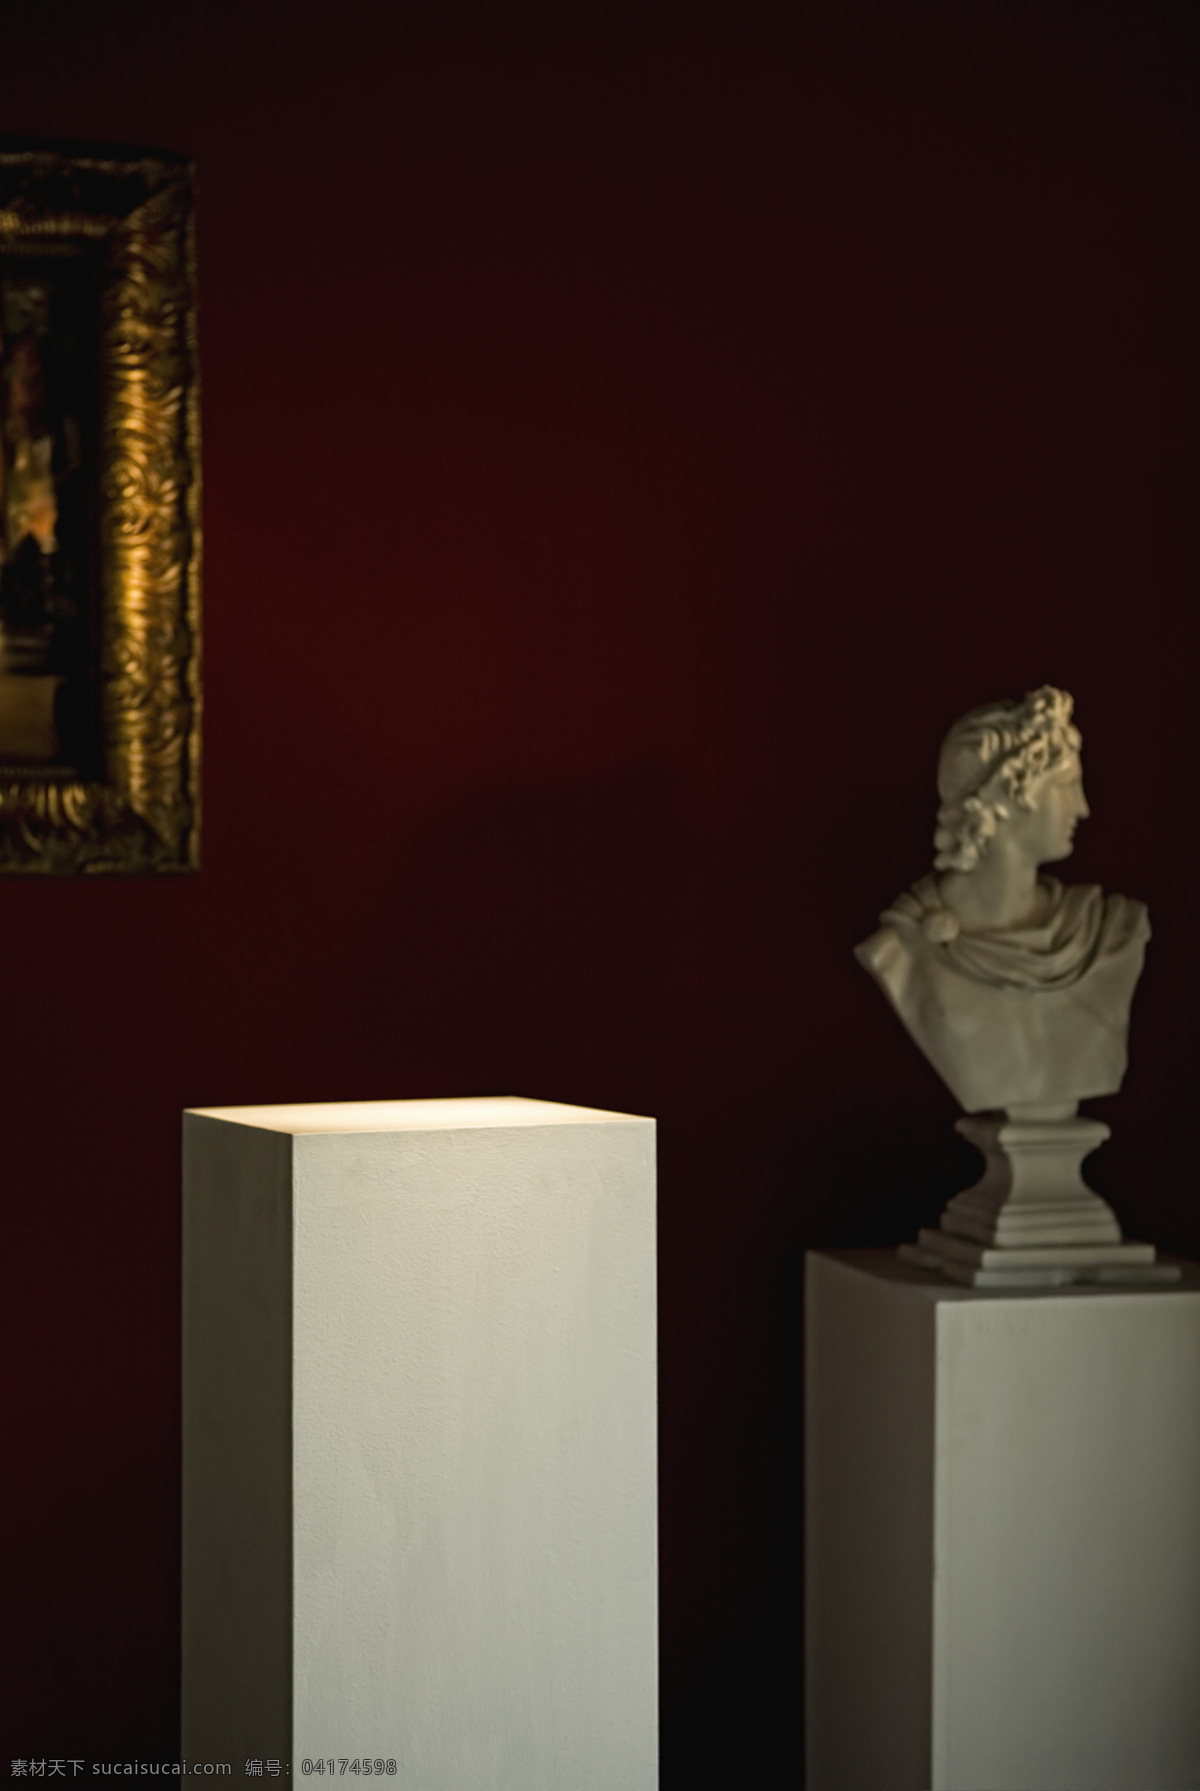 博物馆 展位 石雕 文化艺术 艺术品 展览 展台 博物馆的展位 小卫 珍藏 无人 装饰素材 展示设计